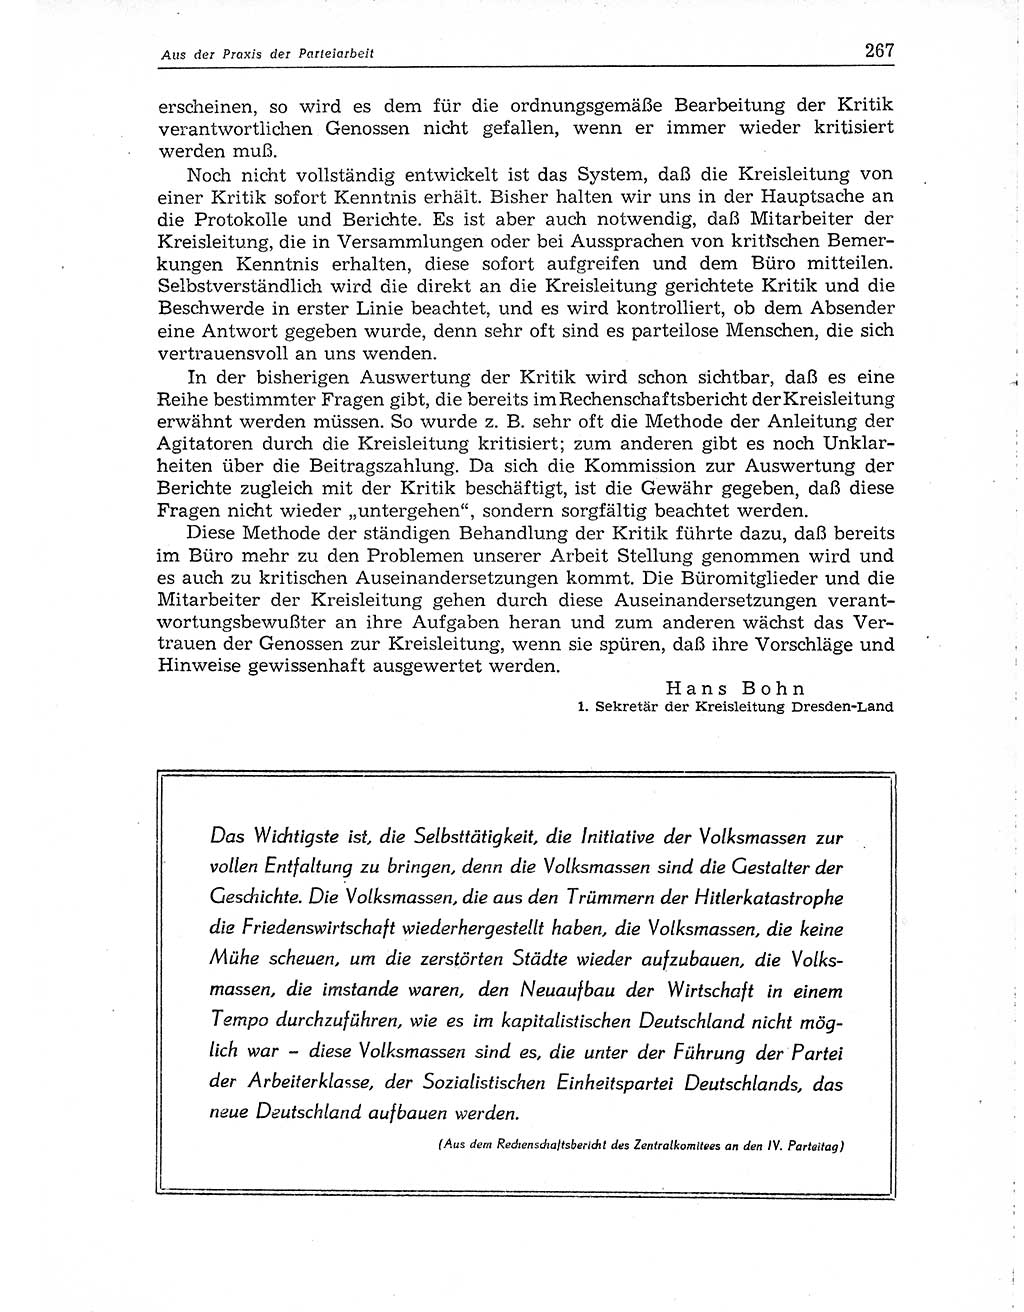 Neuer Weg (NW), Organ des Zentralkomitees (ZK) der SED (Sozialistische Einheitspartei Deutschlands) für Fragen des Parteiaufbaus und des Parteilebens, 10. Jahrgang [Deutsche Demokratische Republik (DDR)] 1955, Seite 267 (NW ZK SED DDR 1955, S. 267)